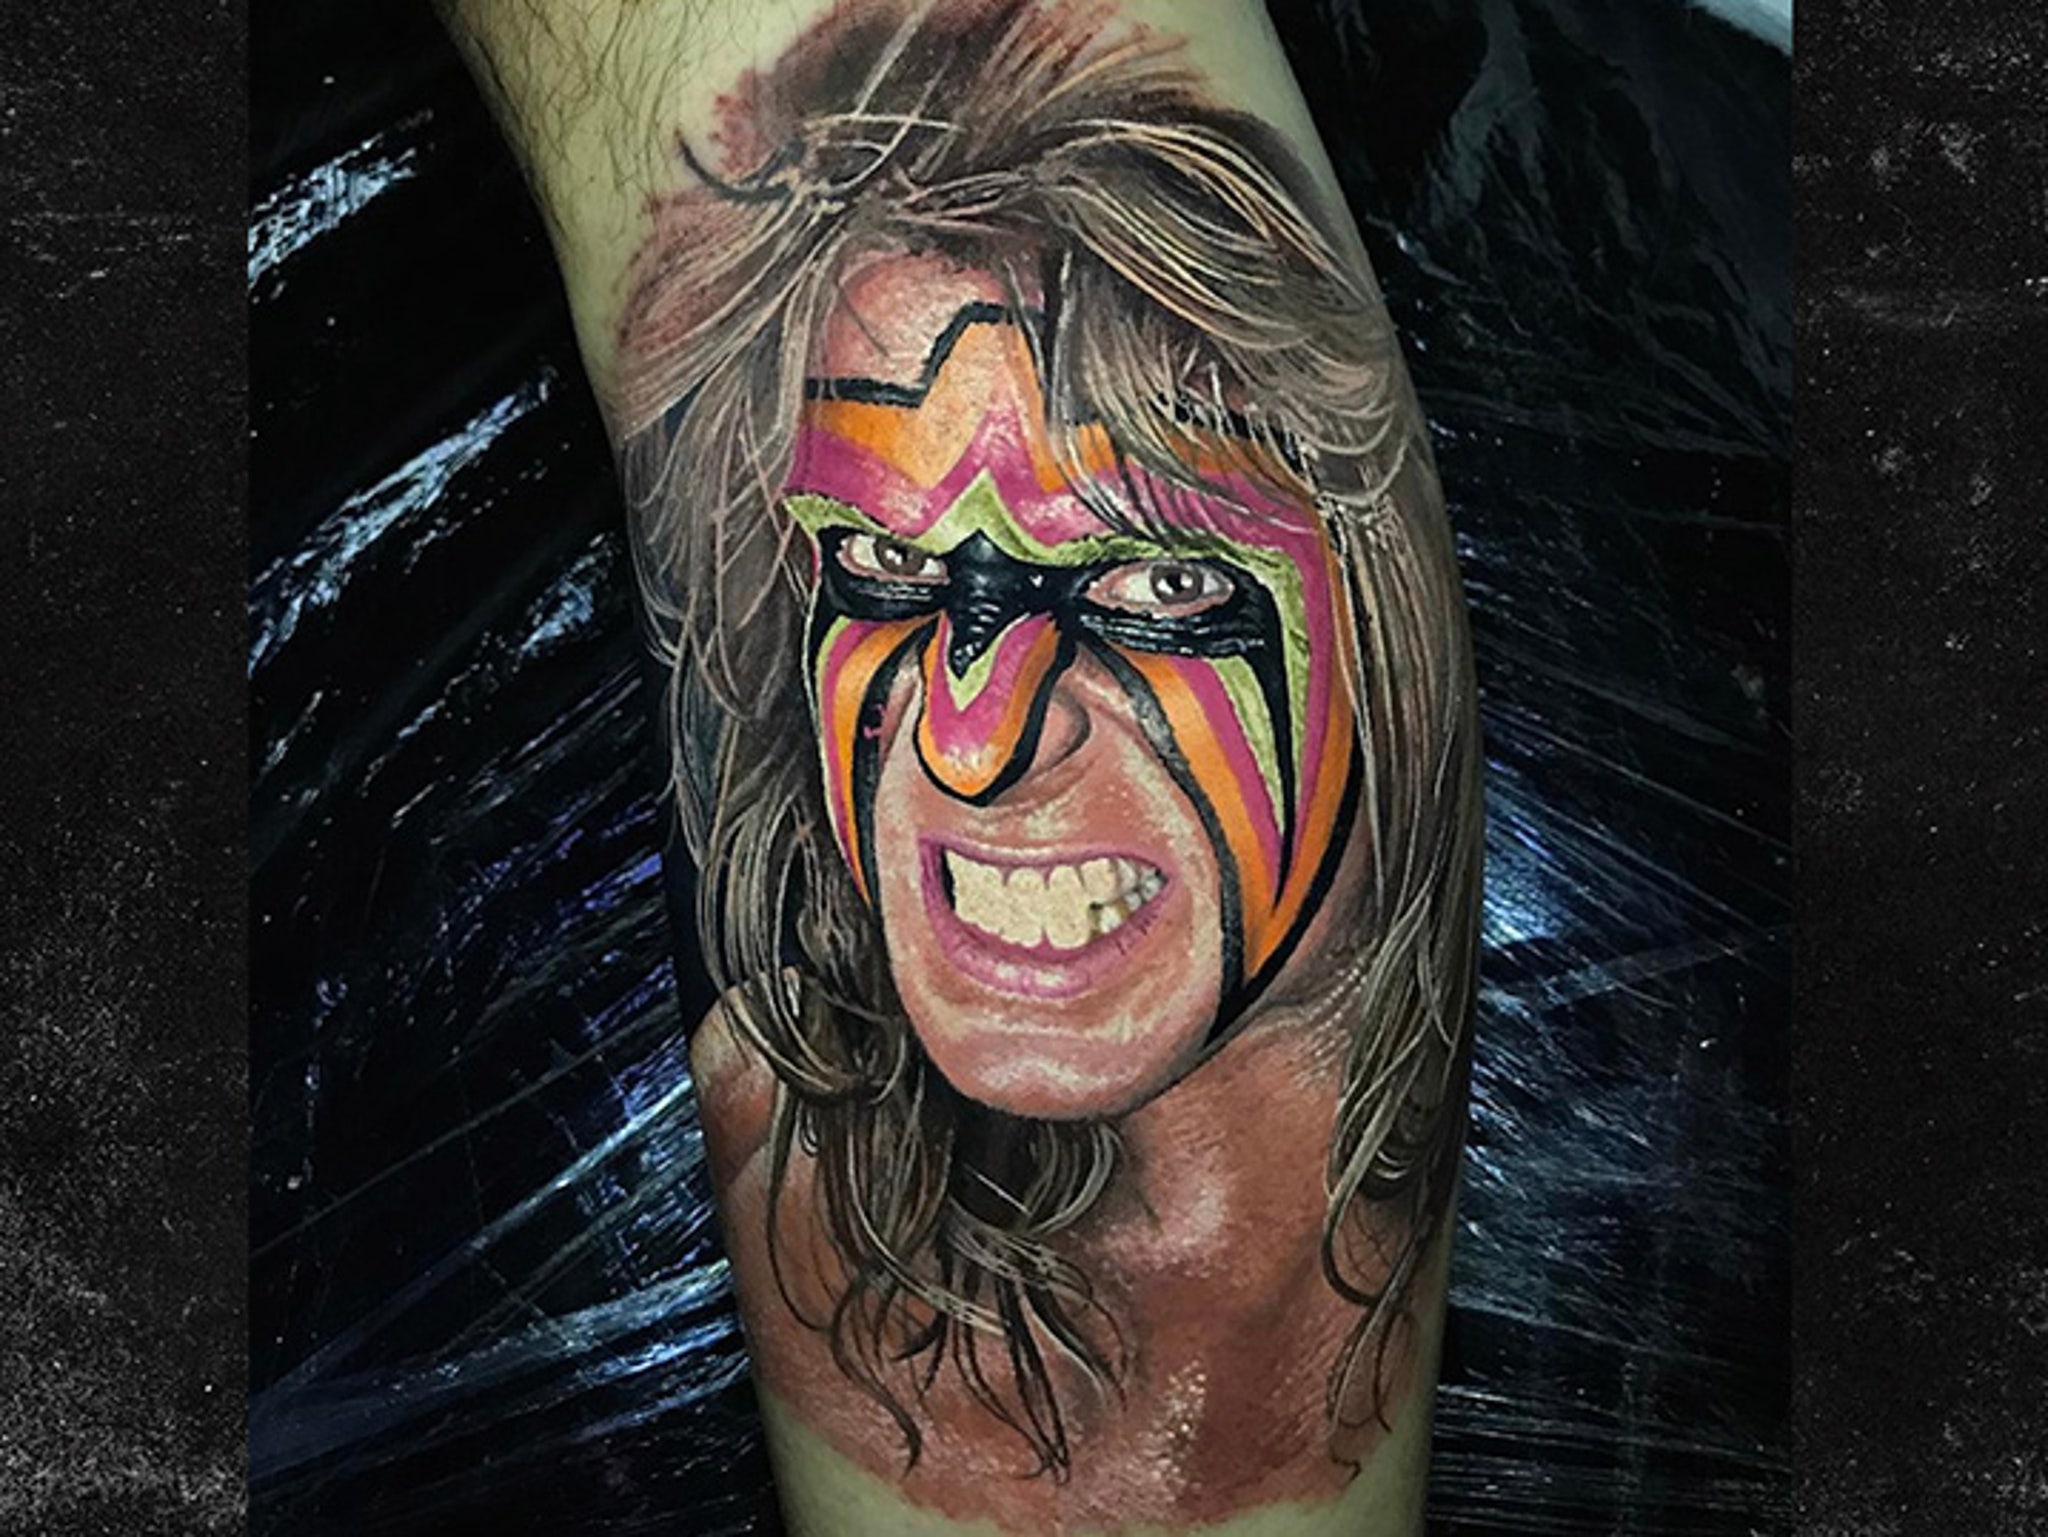 Sontheimer Tattoo  Got a shot today of Johns Ultimate Warrior tattoo